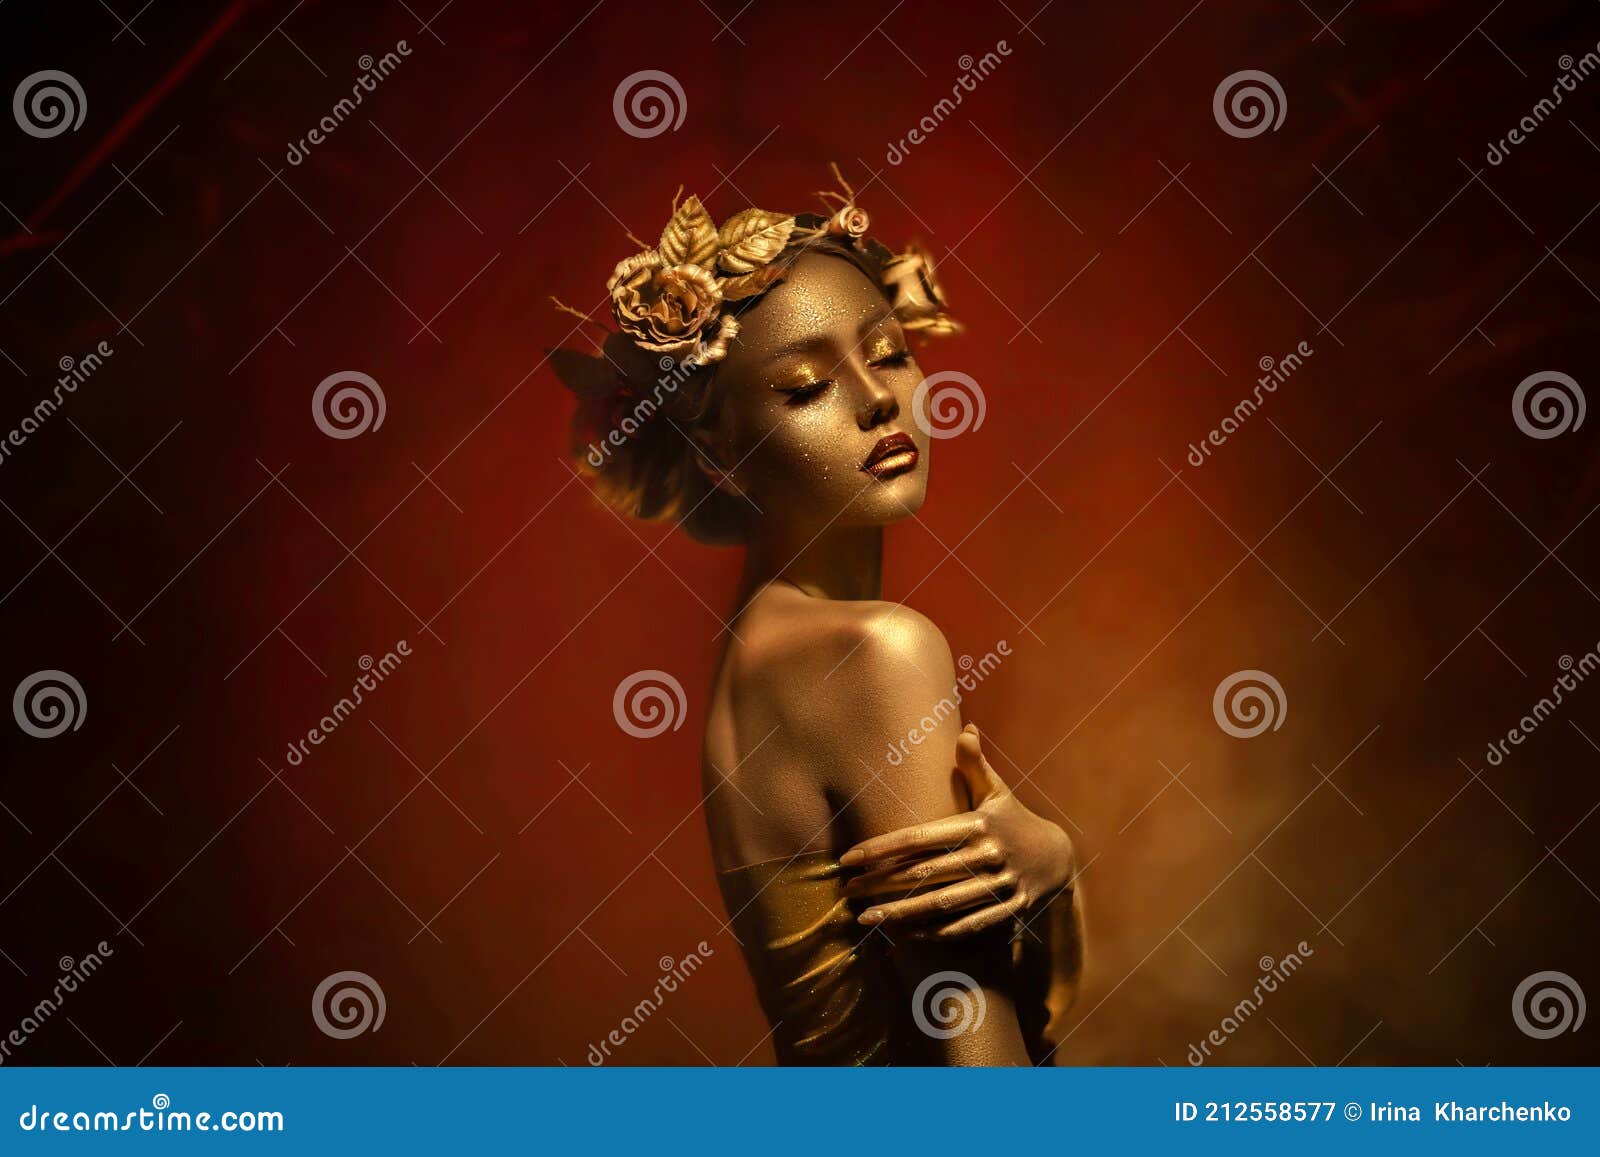 Portrait Closeup Beauty Fantasy Woman Face Gold Paint Golden Shiny